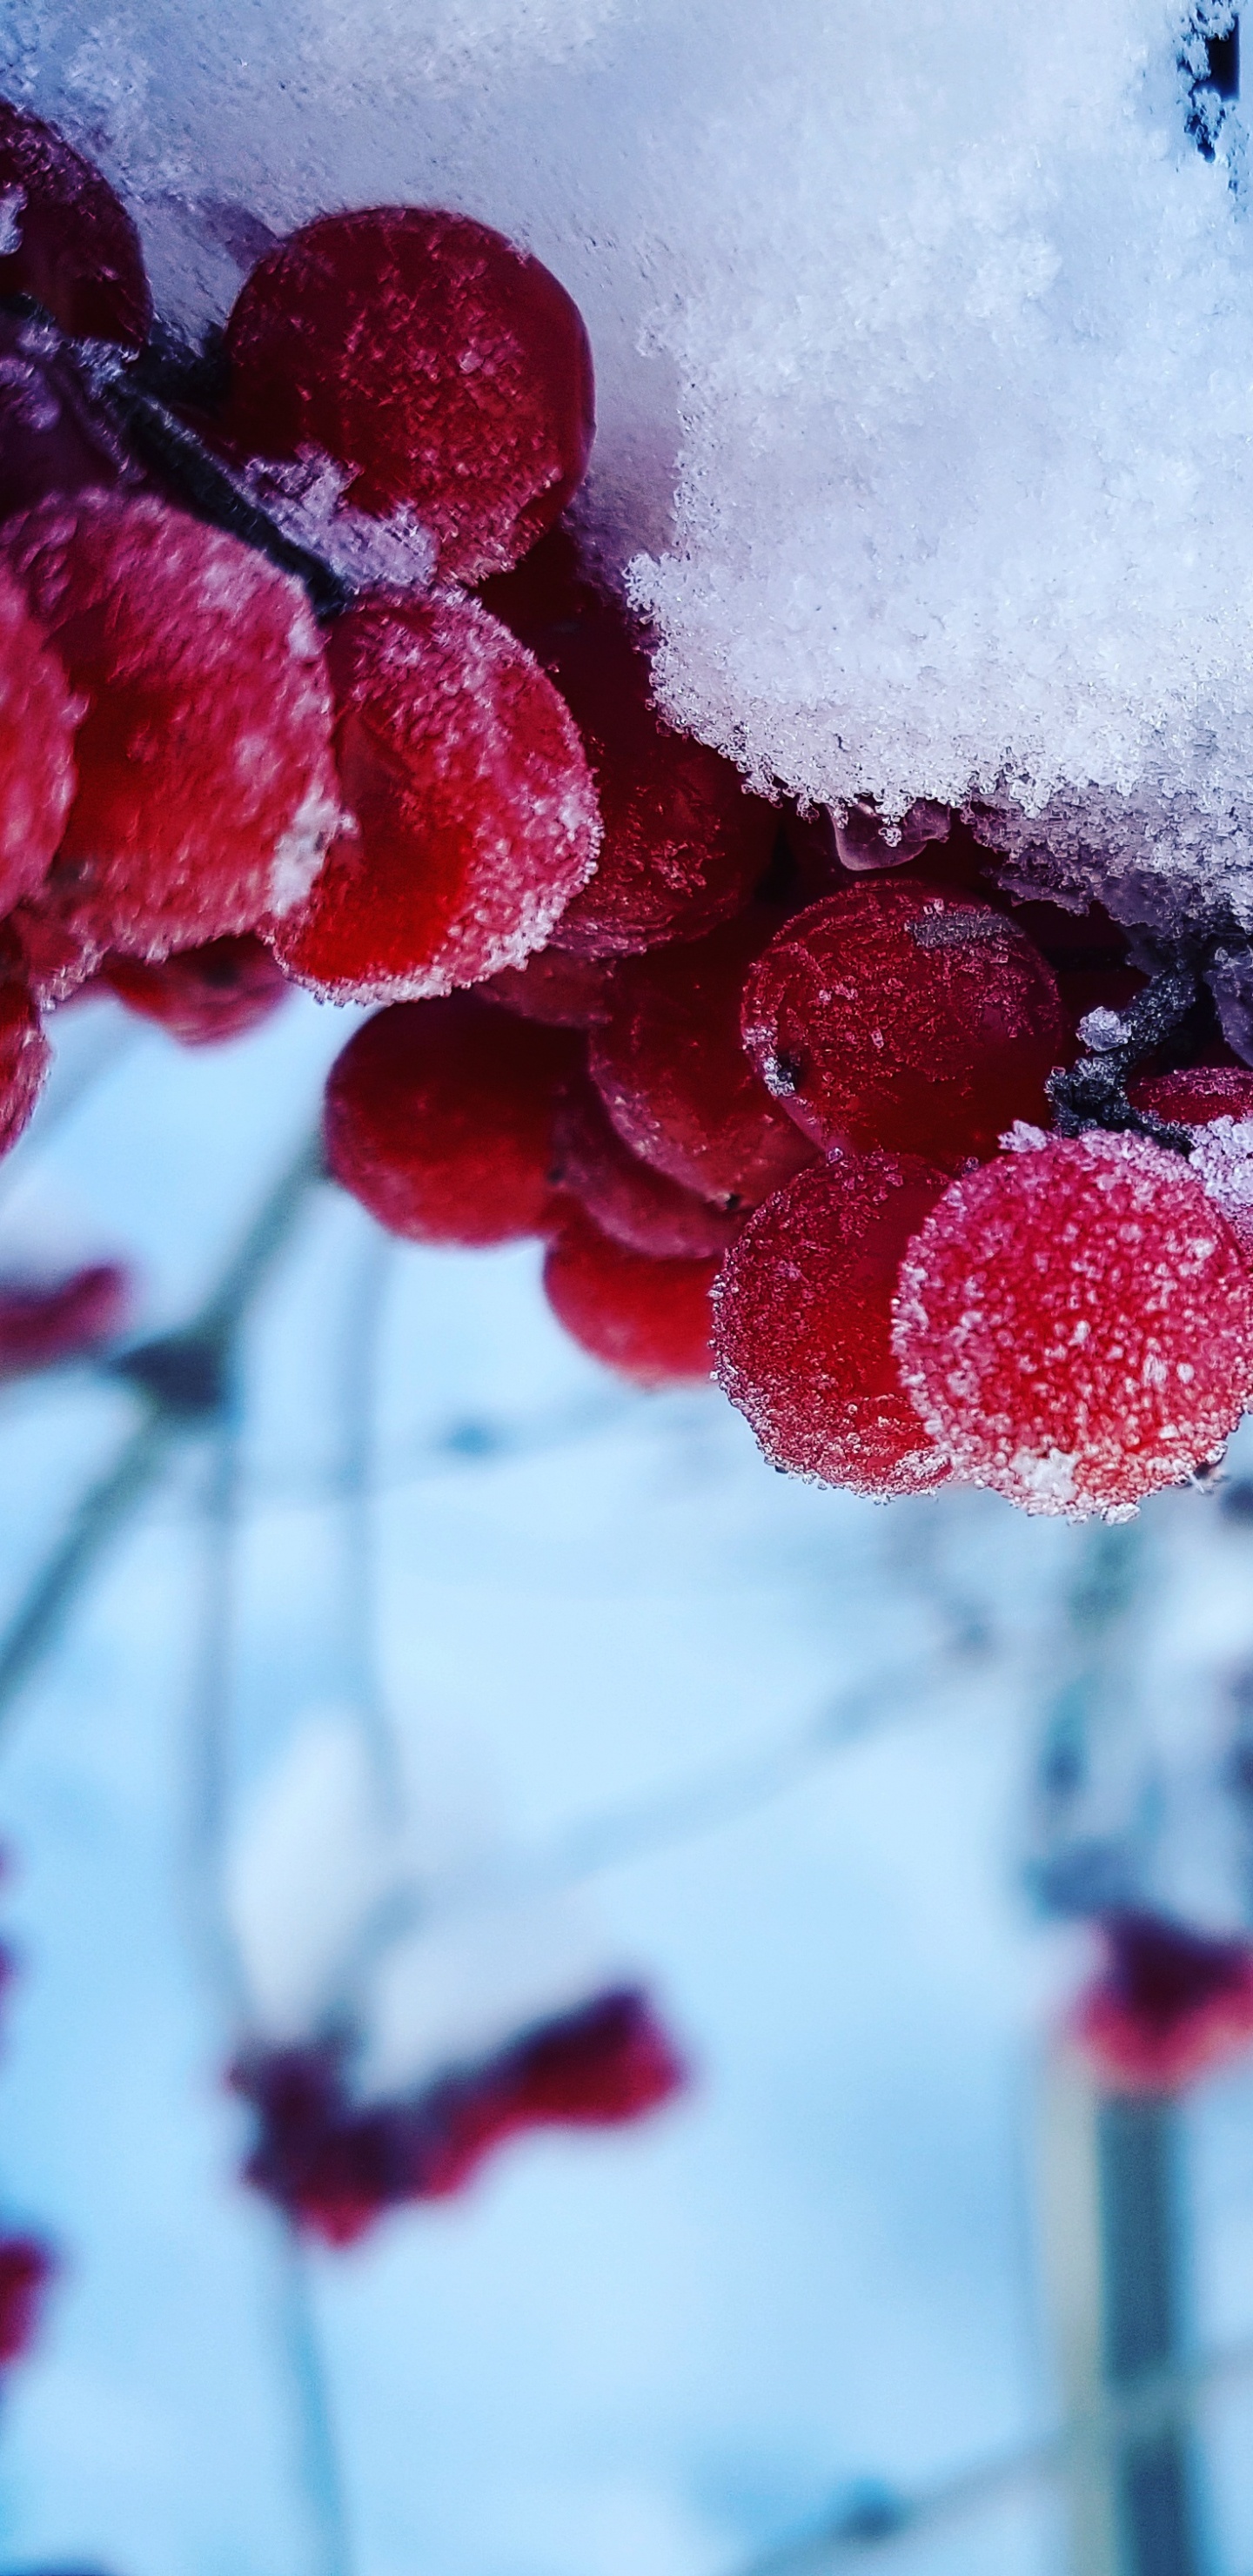 Rote Runde Früchte Mit Schnee Bedeckt. Wallpaper in 1440x2960 Resolution